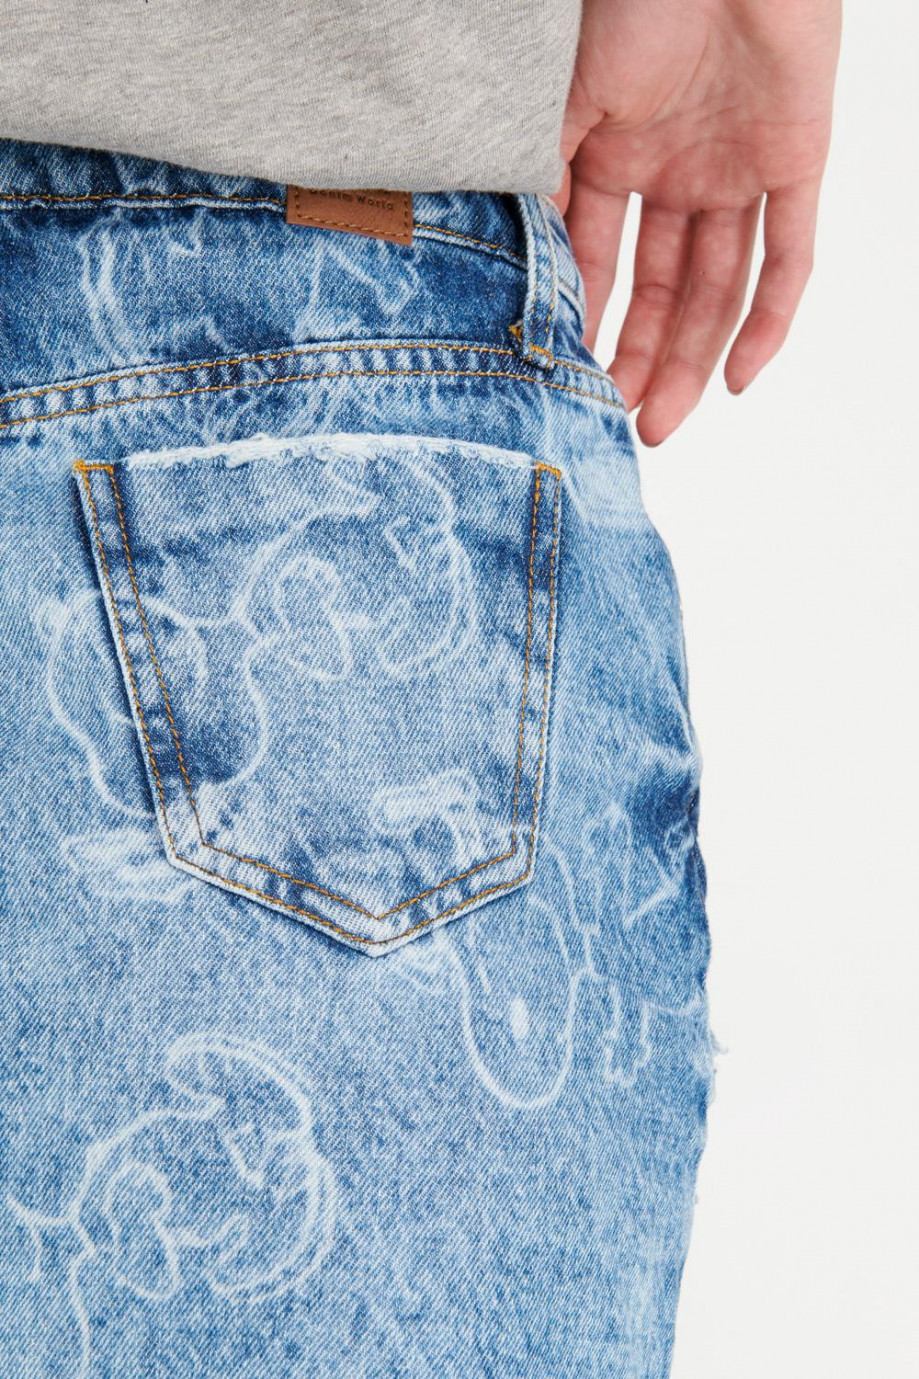 Falda en jean azul clara con diseño láser de Snoopy y rotos